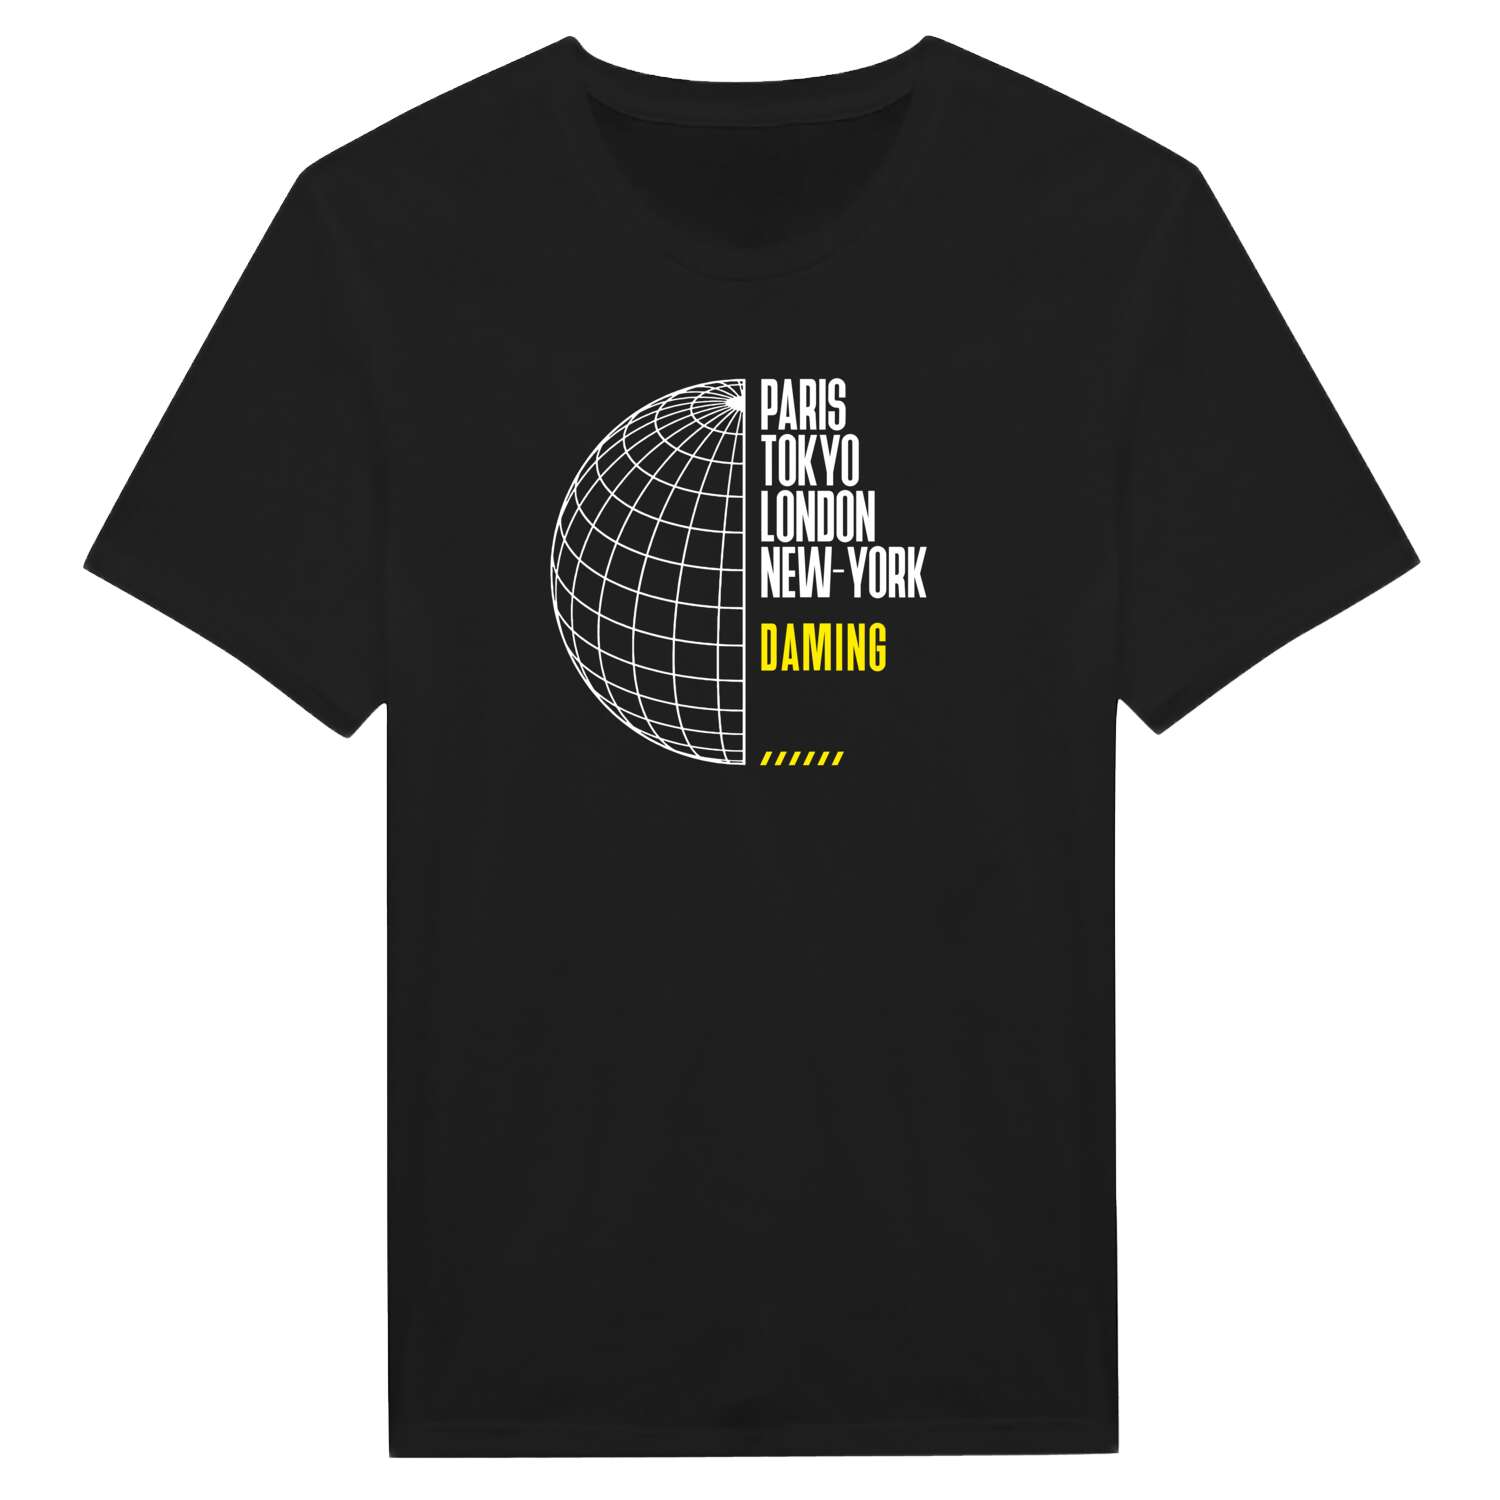 Daming T-Shirt »Paris Tokyo London«